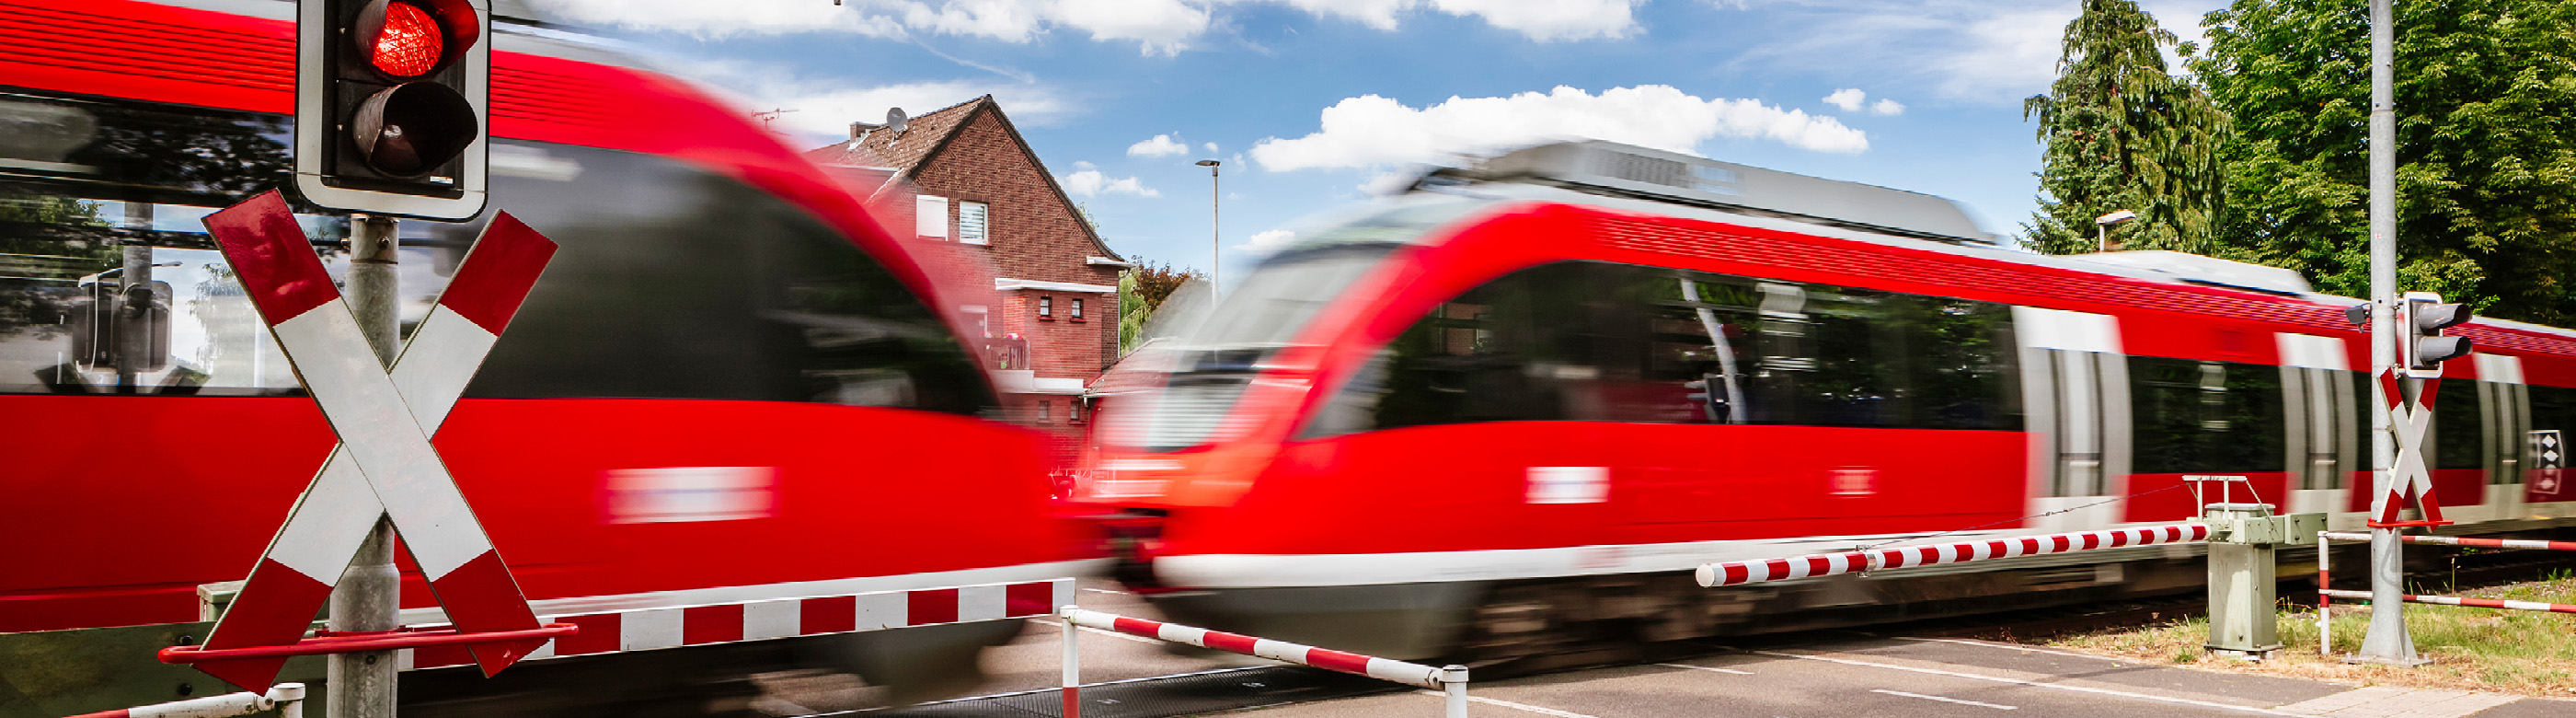 <p>Das Verkehrsgutachten zur Verkehrssituation in Bergheim-Zieverich liegt nun vor. Damit ist die Vorplanung beim Ausbau der Erftbahn zur S-Bahn abgeschlossen.</p>